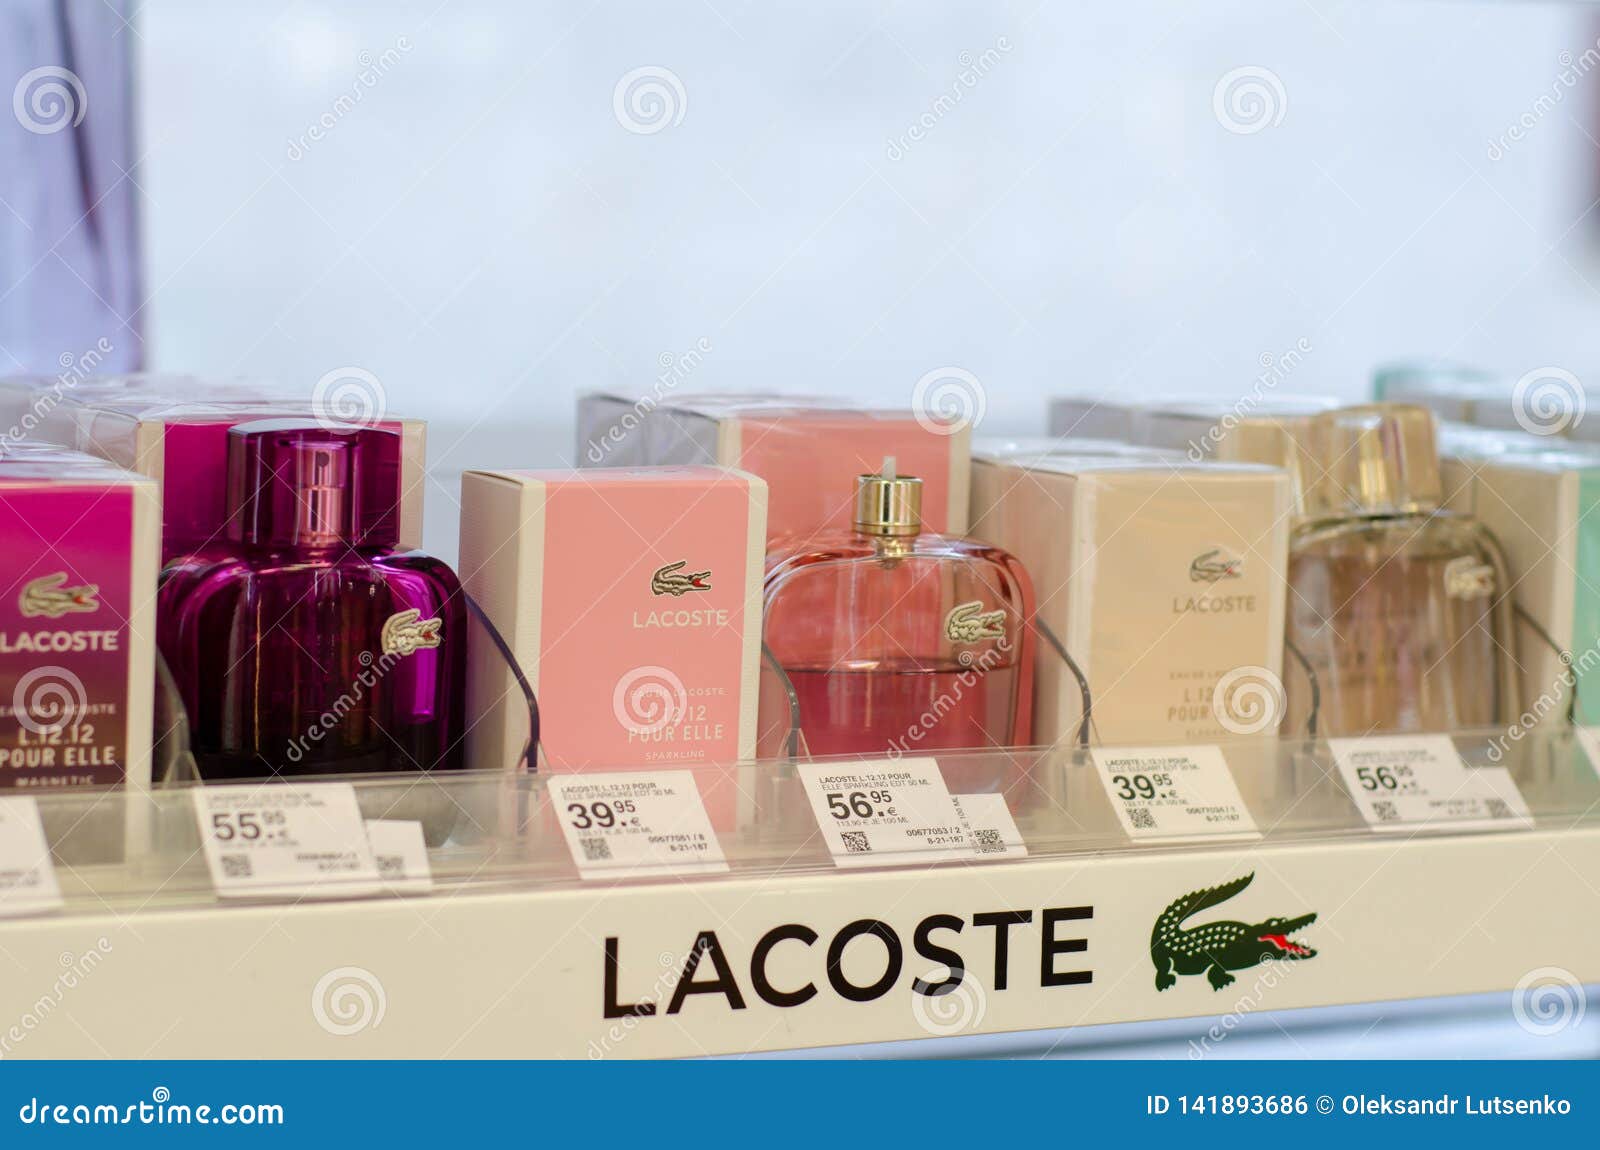 Lacoste Perfume Photos - Free & Stock Photos Dreamstime